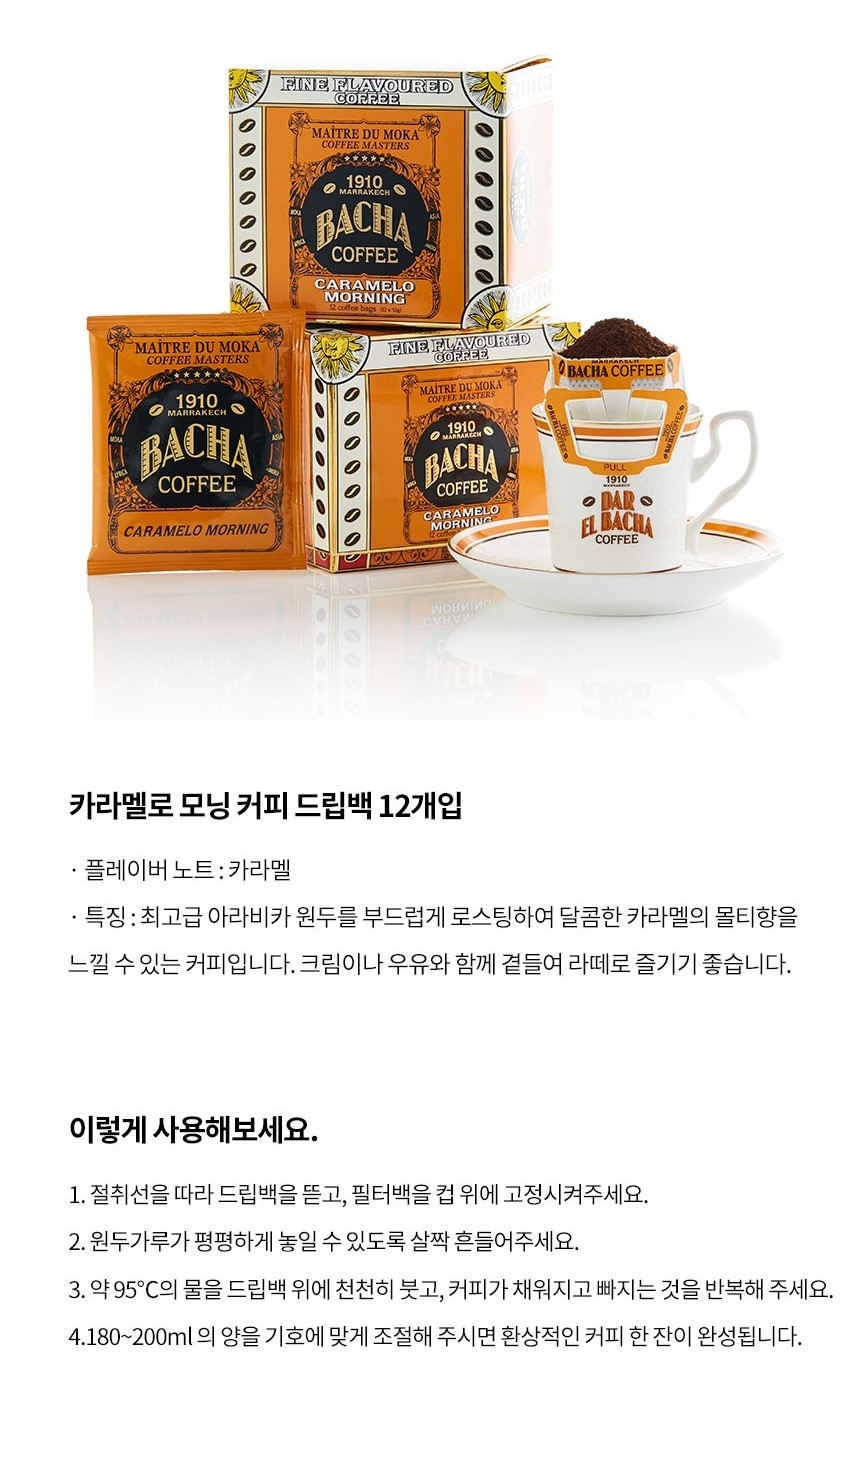 韓國食品-[Bacha Coffee] Coffee Bag (Caramelo Morning) 12g*12